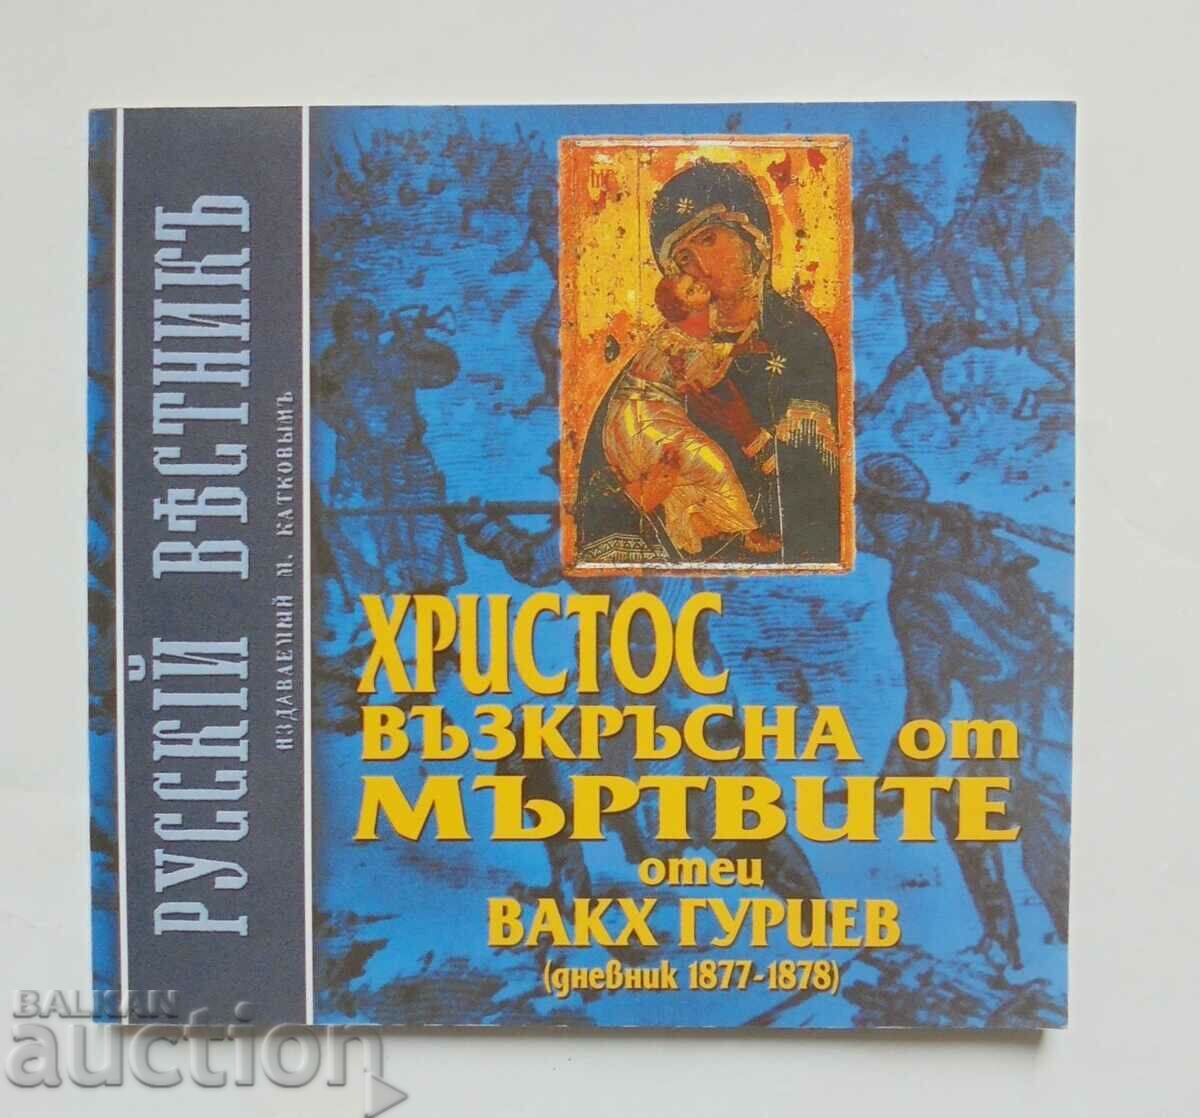 Hristos a înviat din morți - Bacchus Guriev 2003